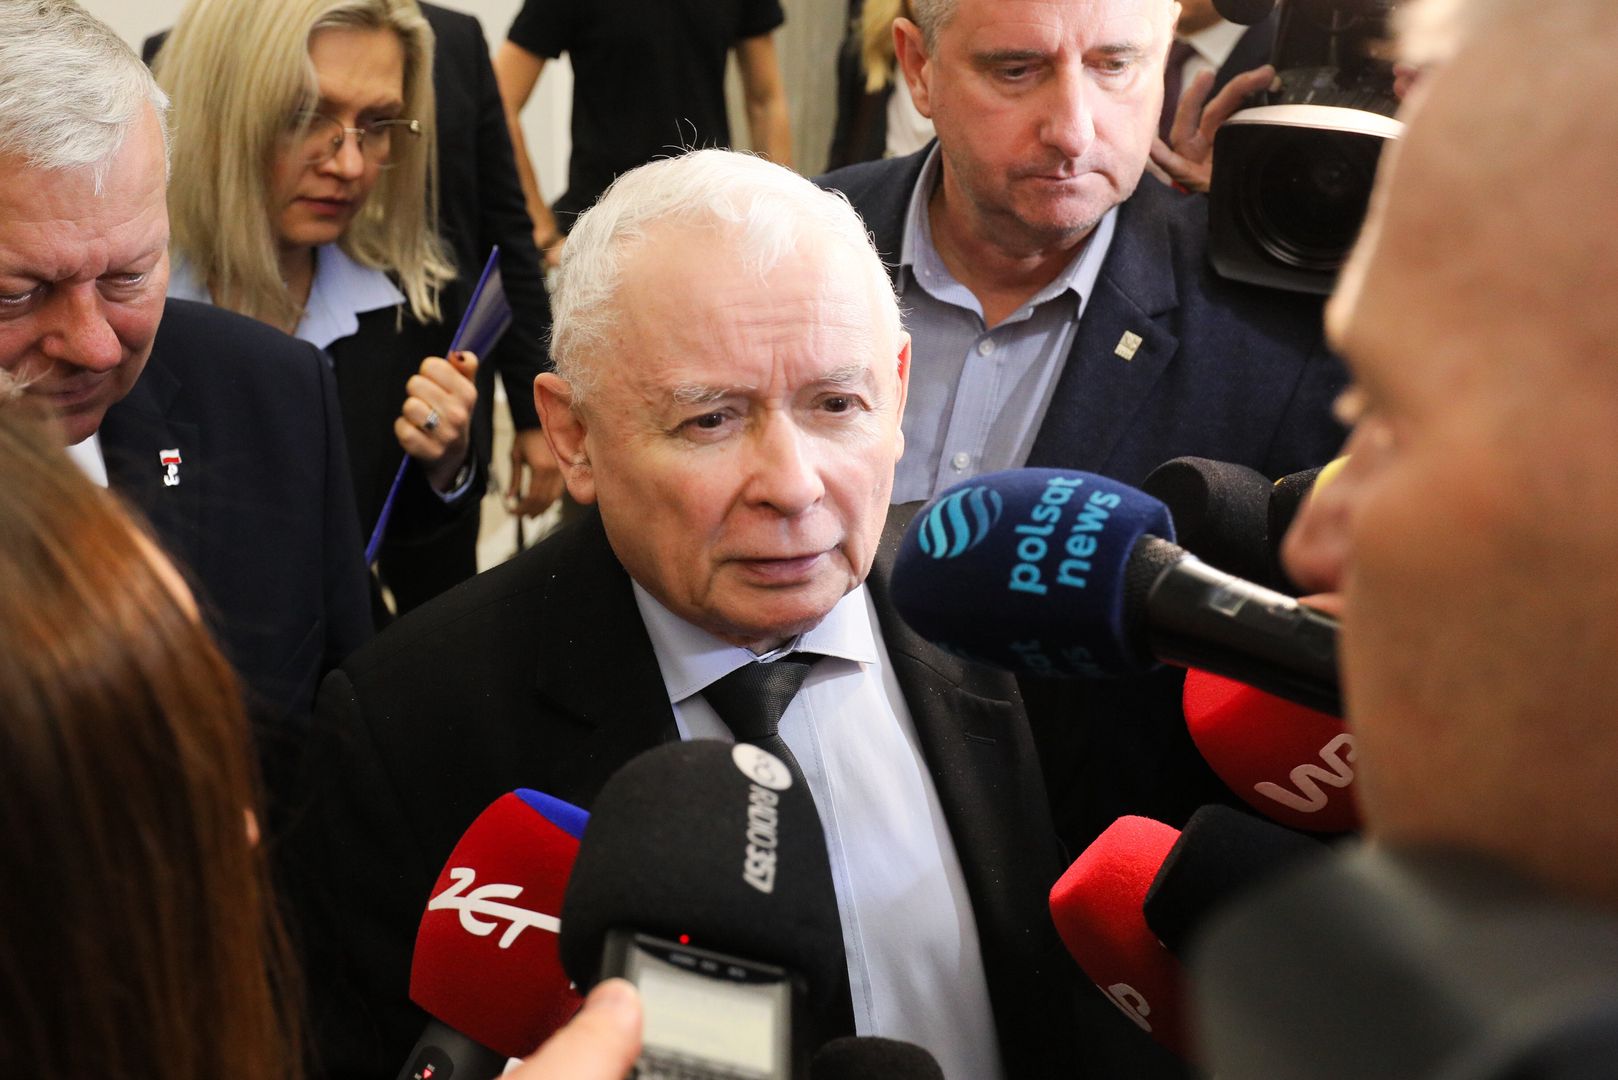 "Zachowywał się jak ostatni lump". Kaczyński powitał Tuska w Sejmie